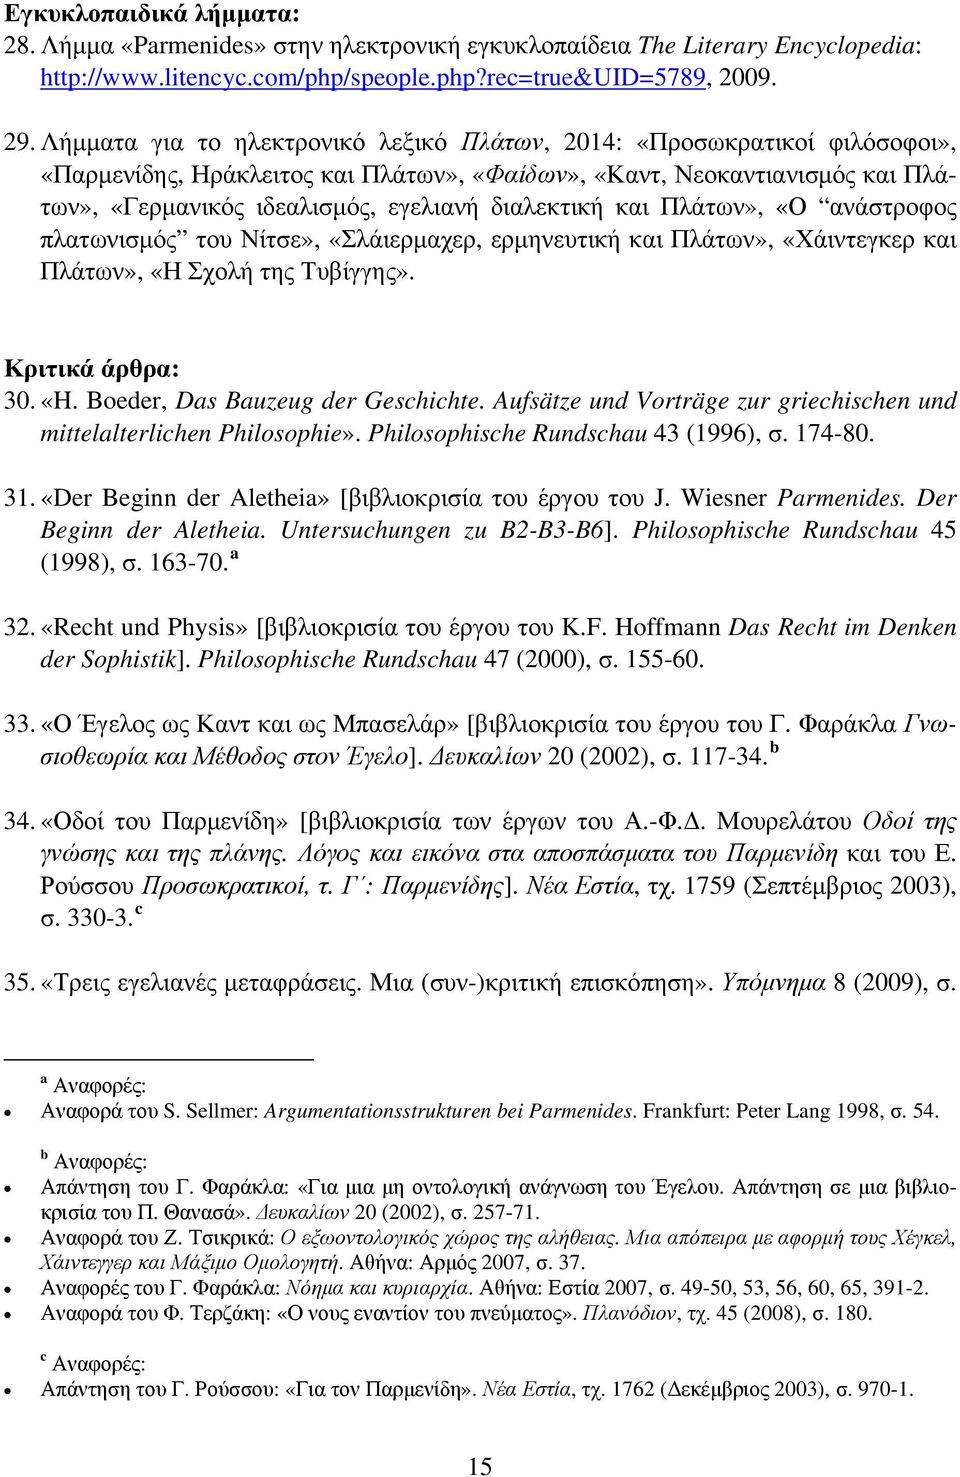 διαλεκτική και Πλάτων», «Ο ανάστροφος πλατωνισμός του Νίτσε», «Σλάιερμαχερ, ερμηνευτική και Πλάτων», «Χάιντεγκερ και Πλάτων», «Η Σχολή της Τυβίγγης». Κριτικά άρθρα: 30. «H.